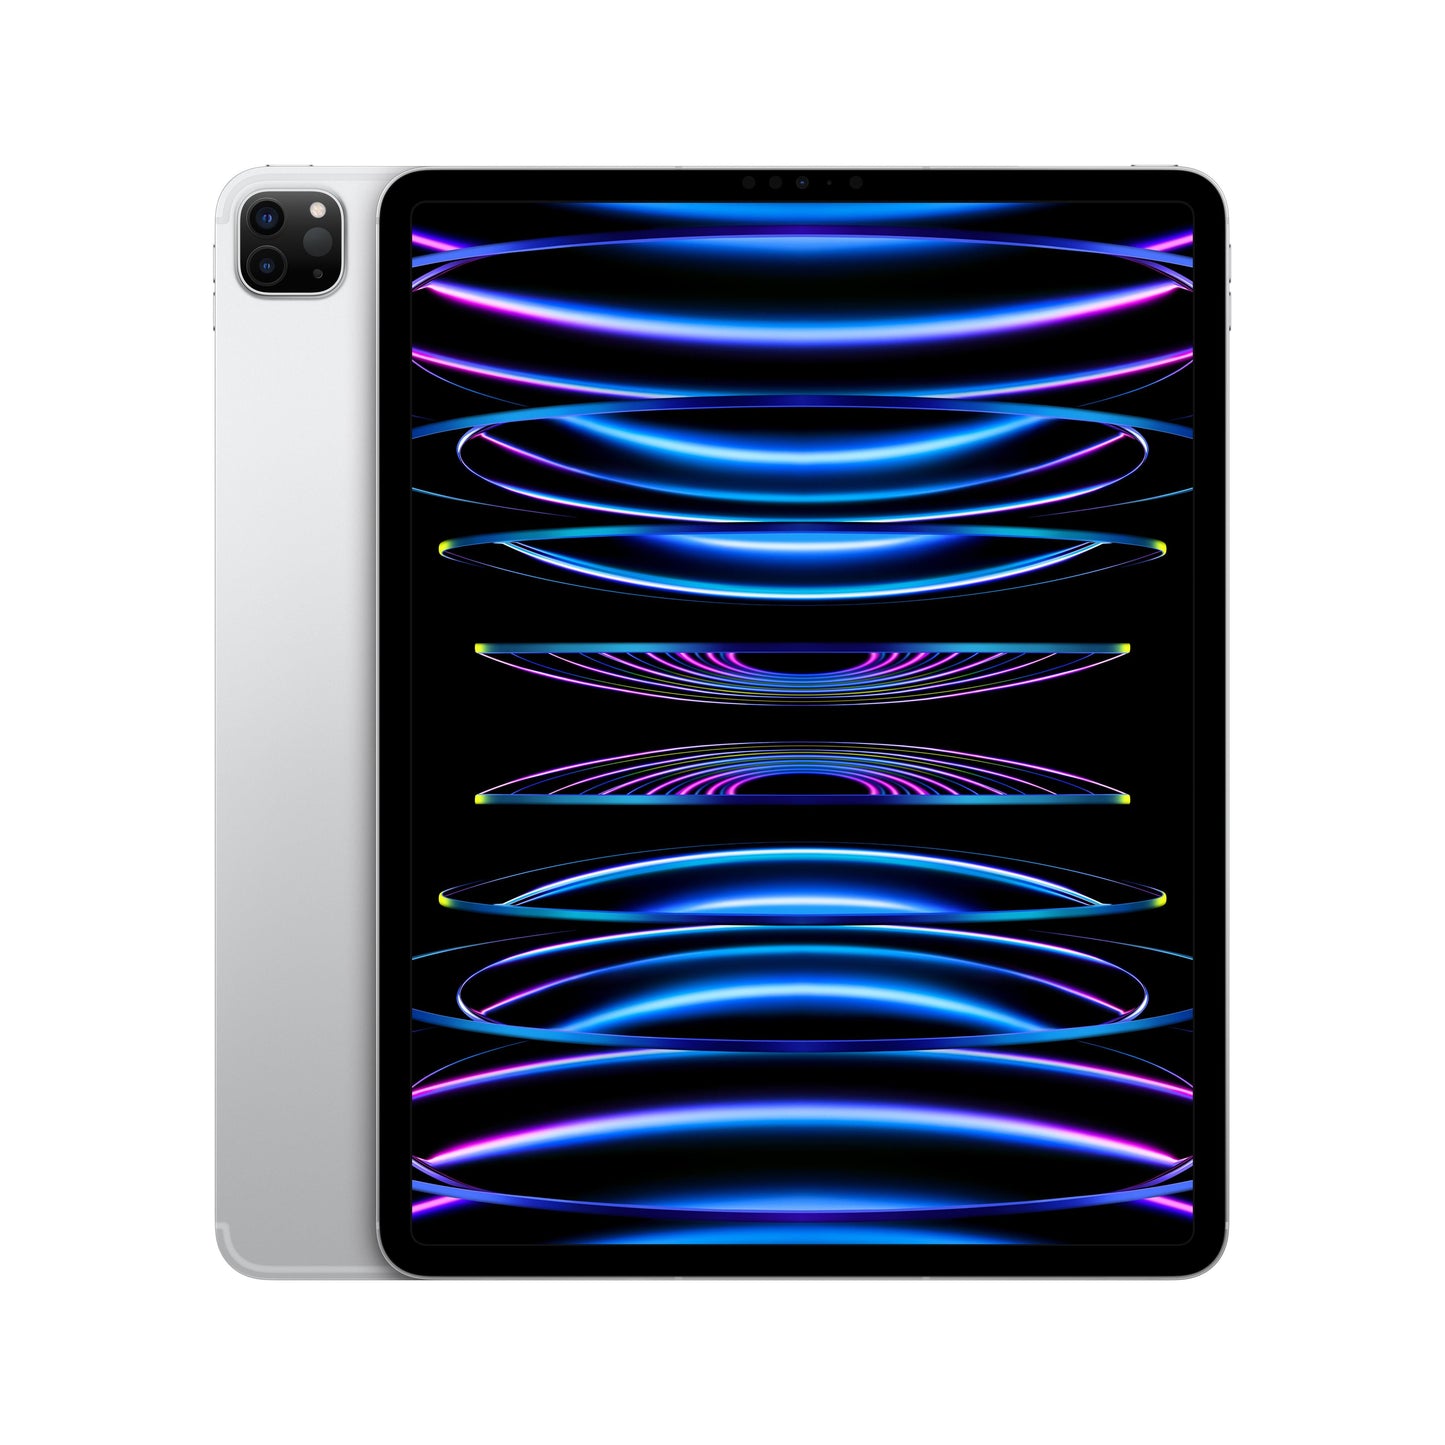 2022 12.9-inch iPad Pro Wi-Fi + Cellular 2TB - Silver (6th generation)